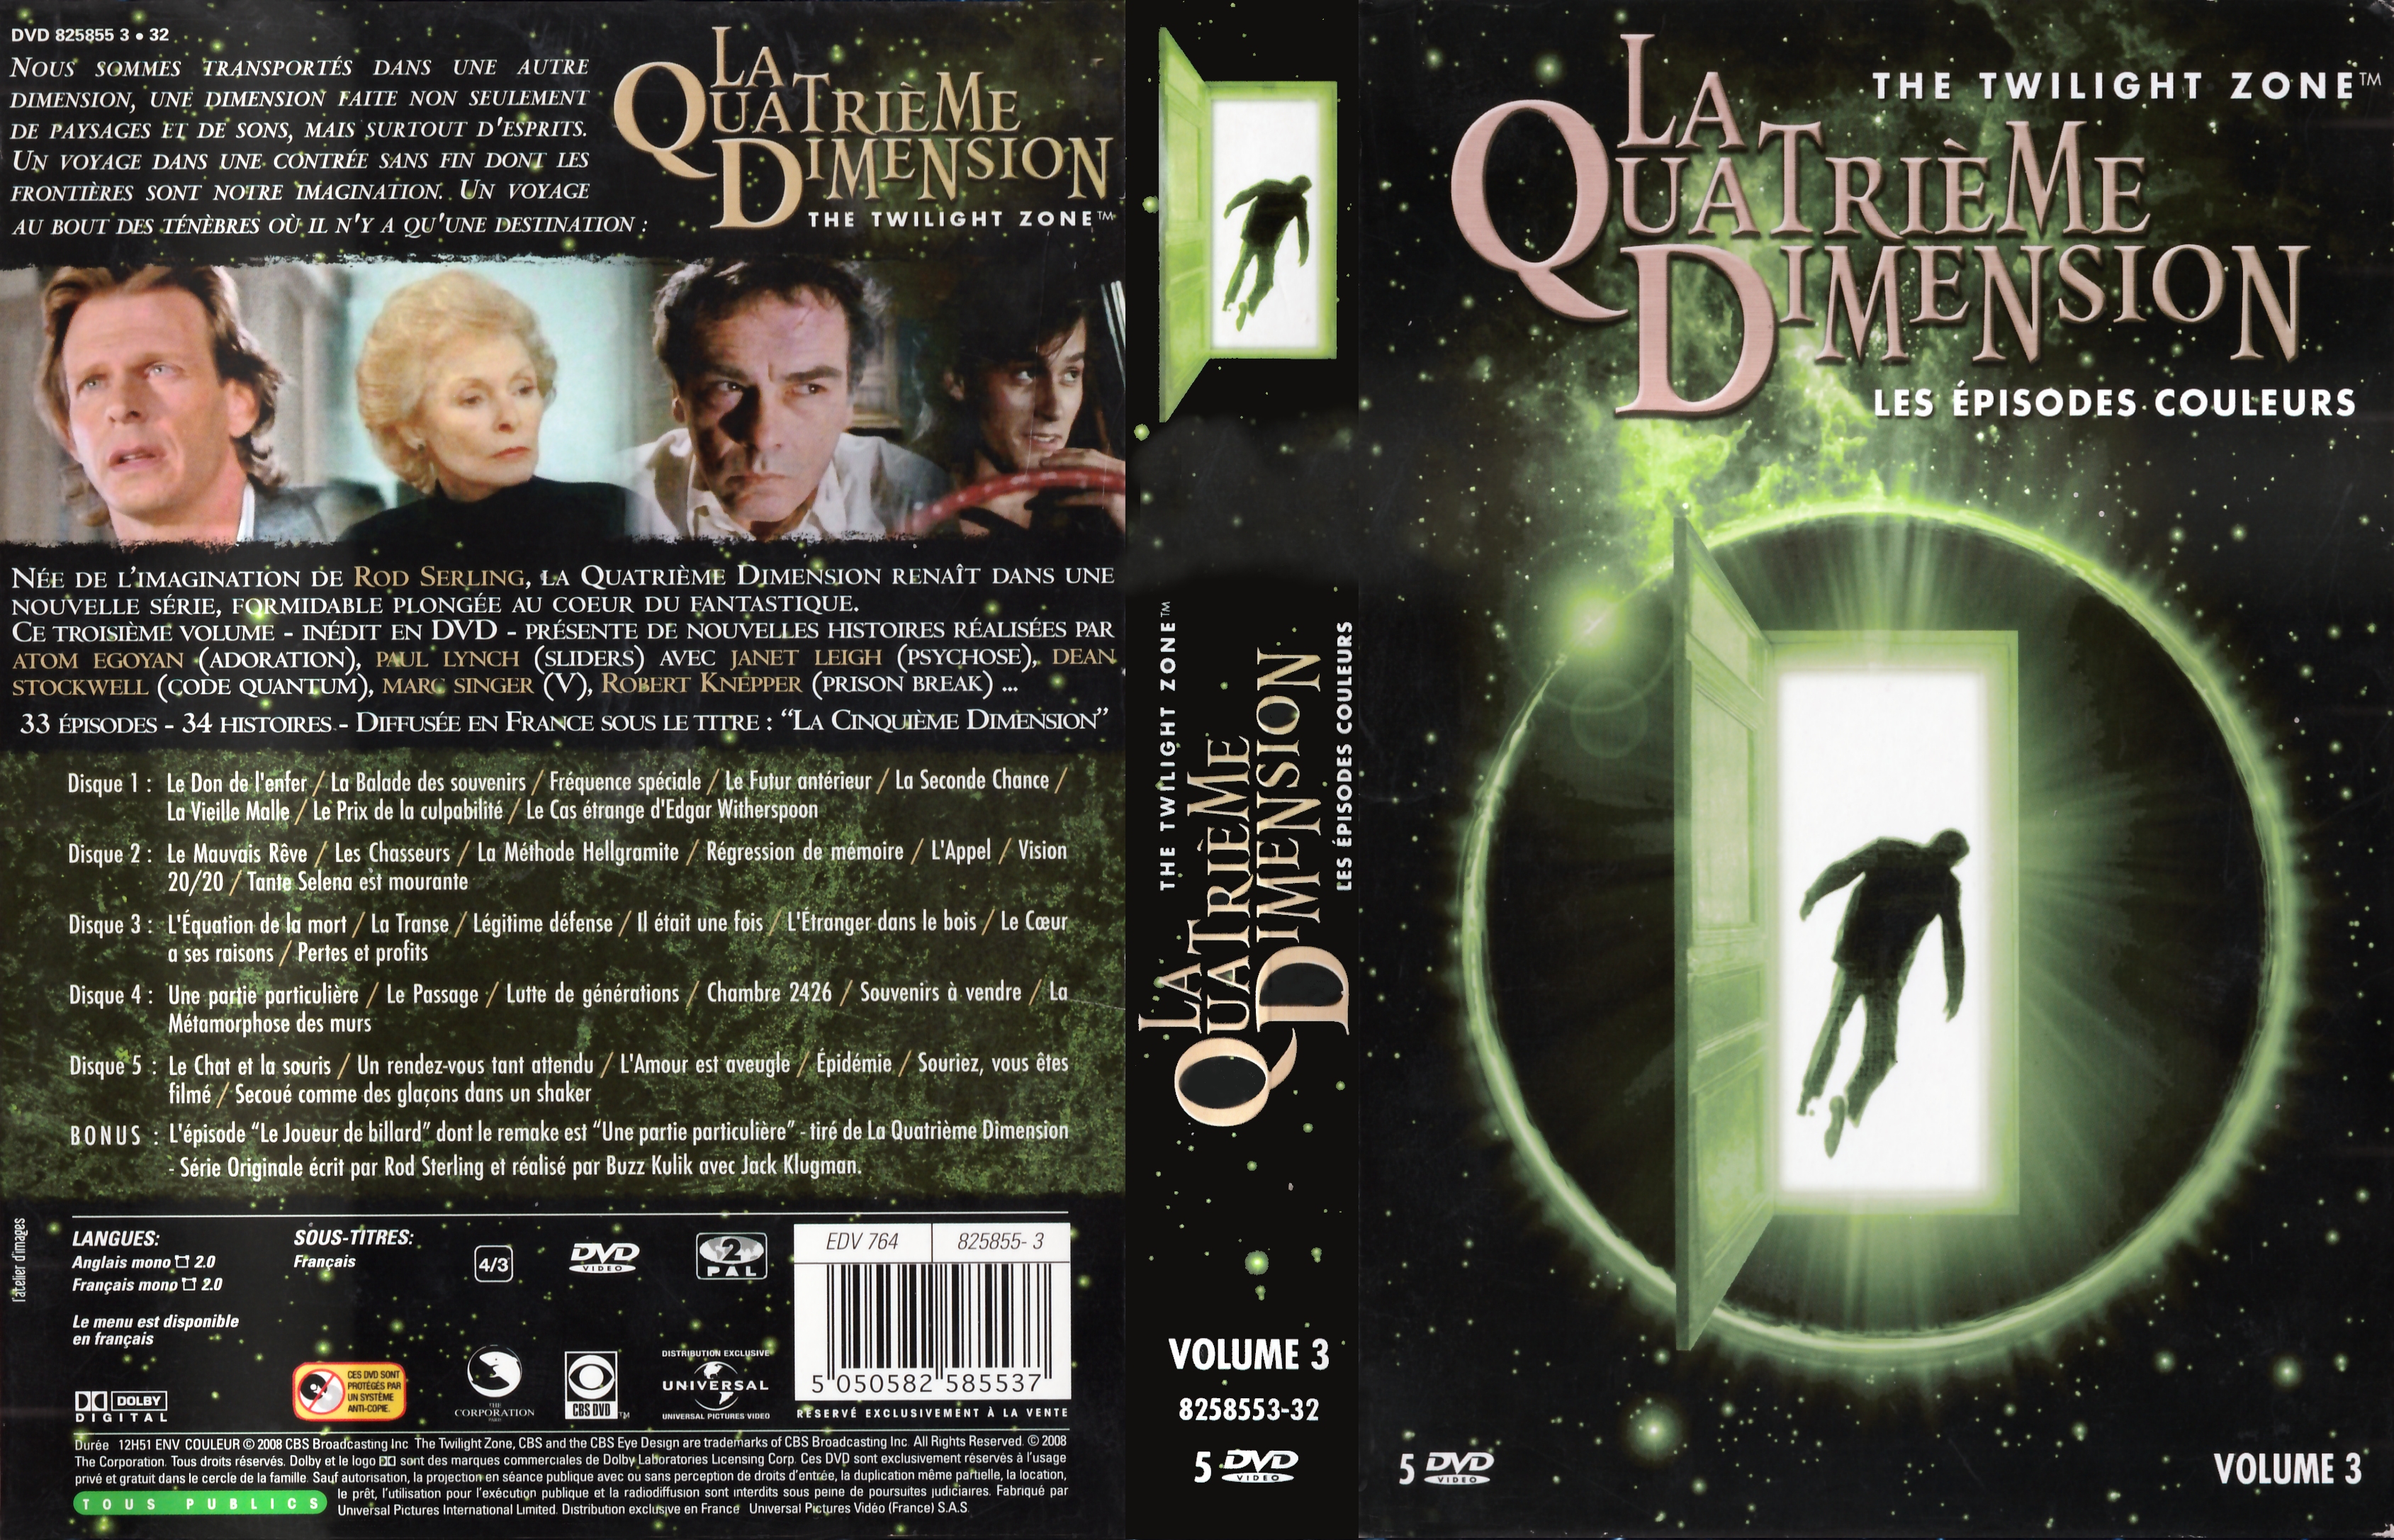 Jaquette DVD La quatrime dimension - Episodes couleurs vol 3